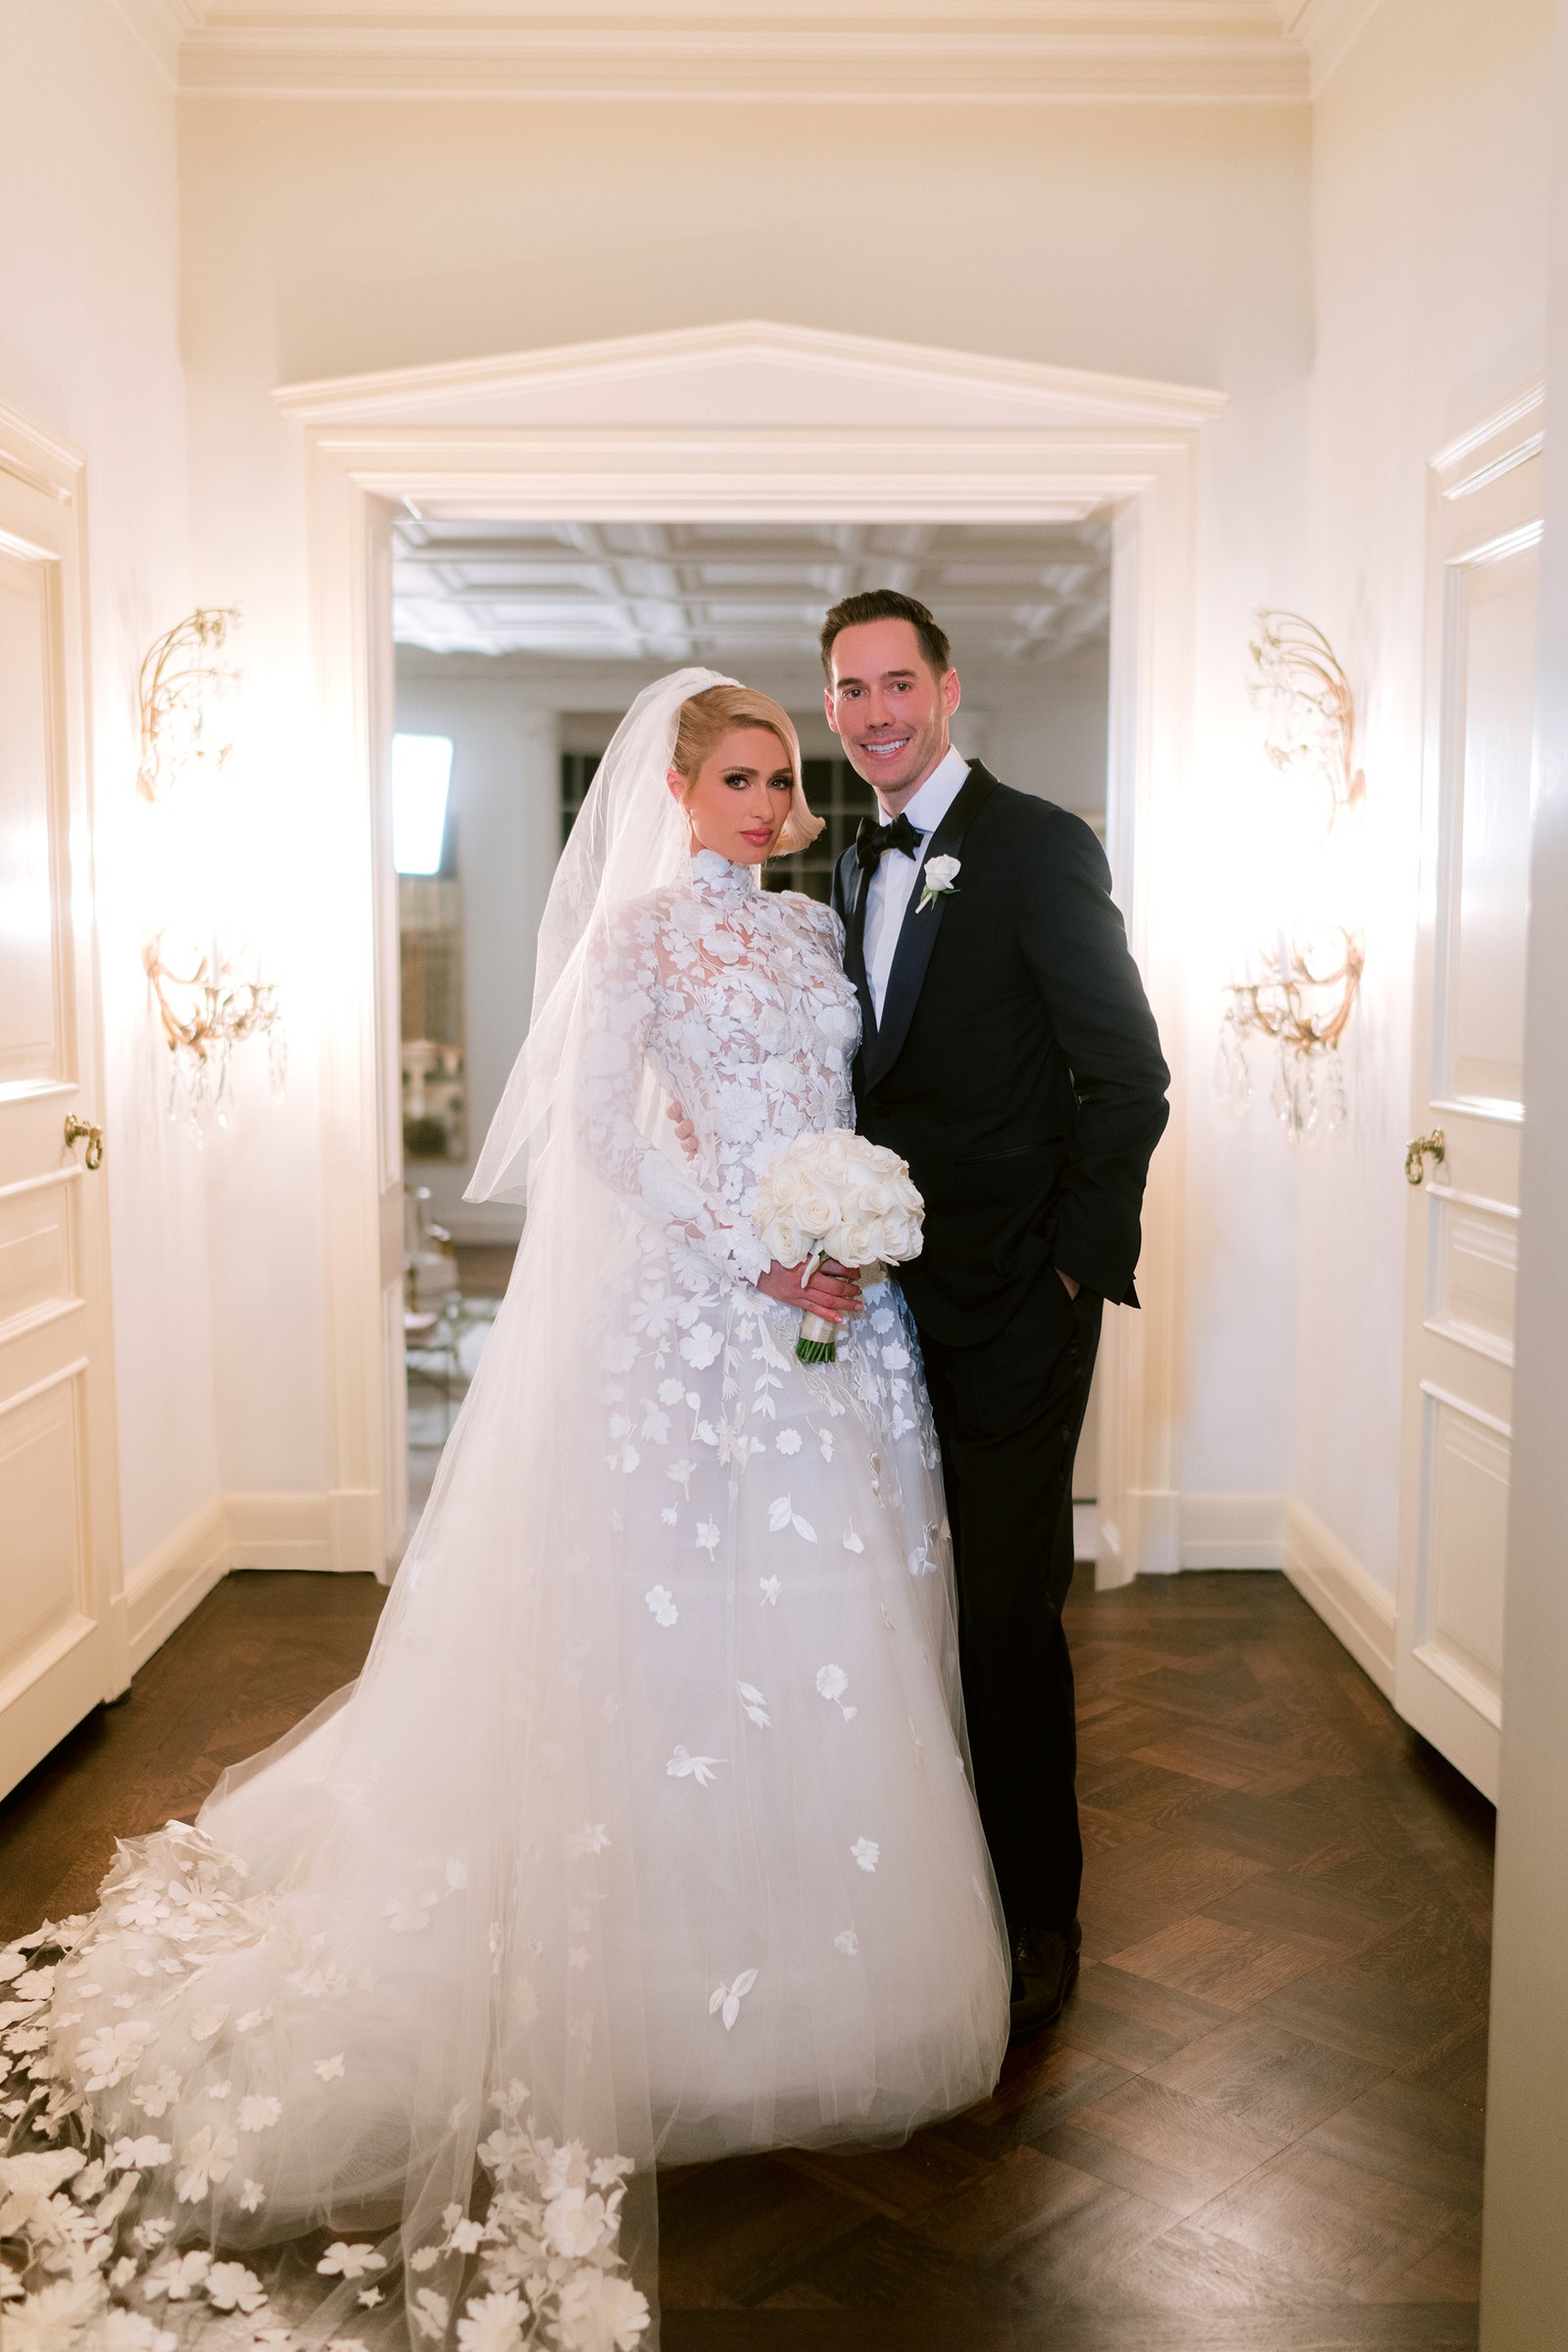 Cận cảnh đám cưới xa hoa, kéo dài suốt 3 ngày ở biệt thự triệu đô của Paris Hilton - Ảnh 7